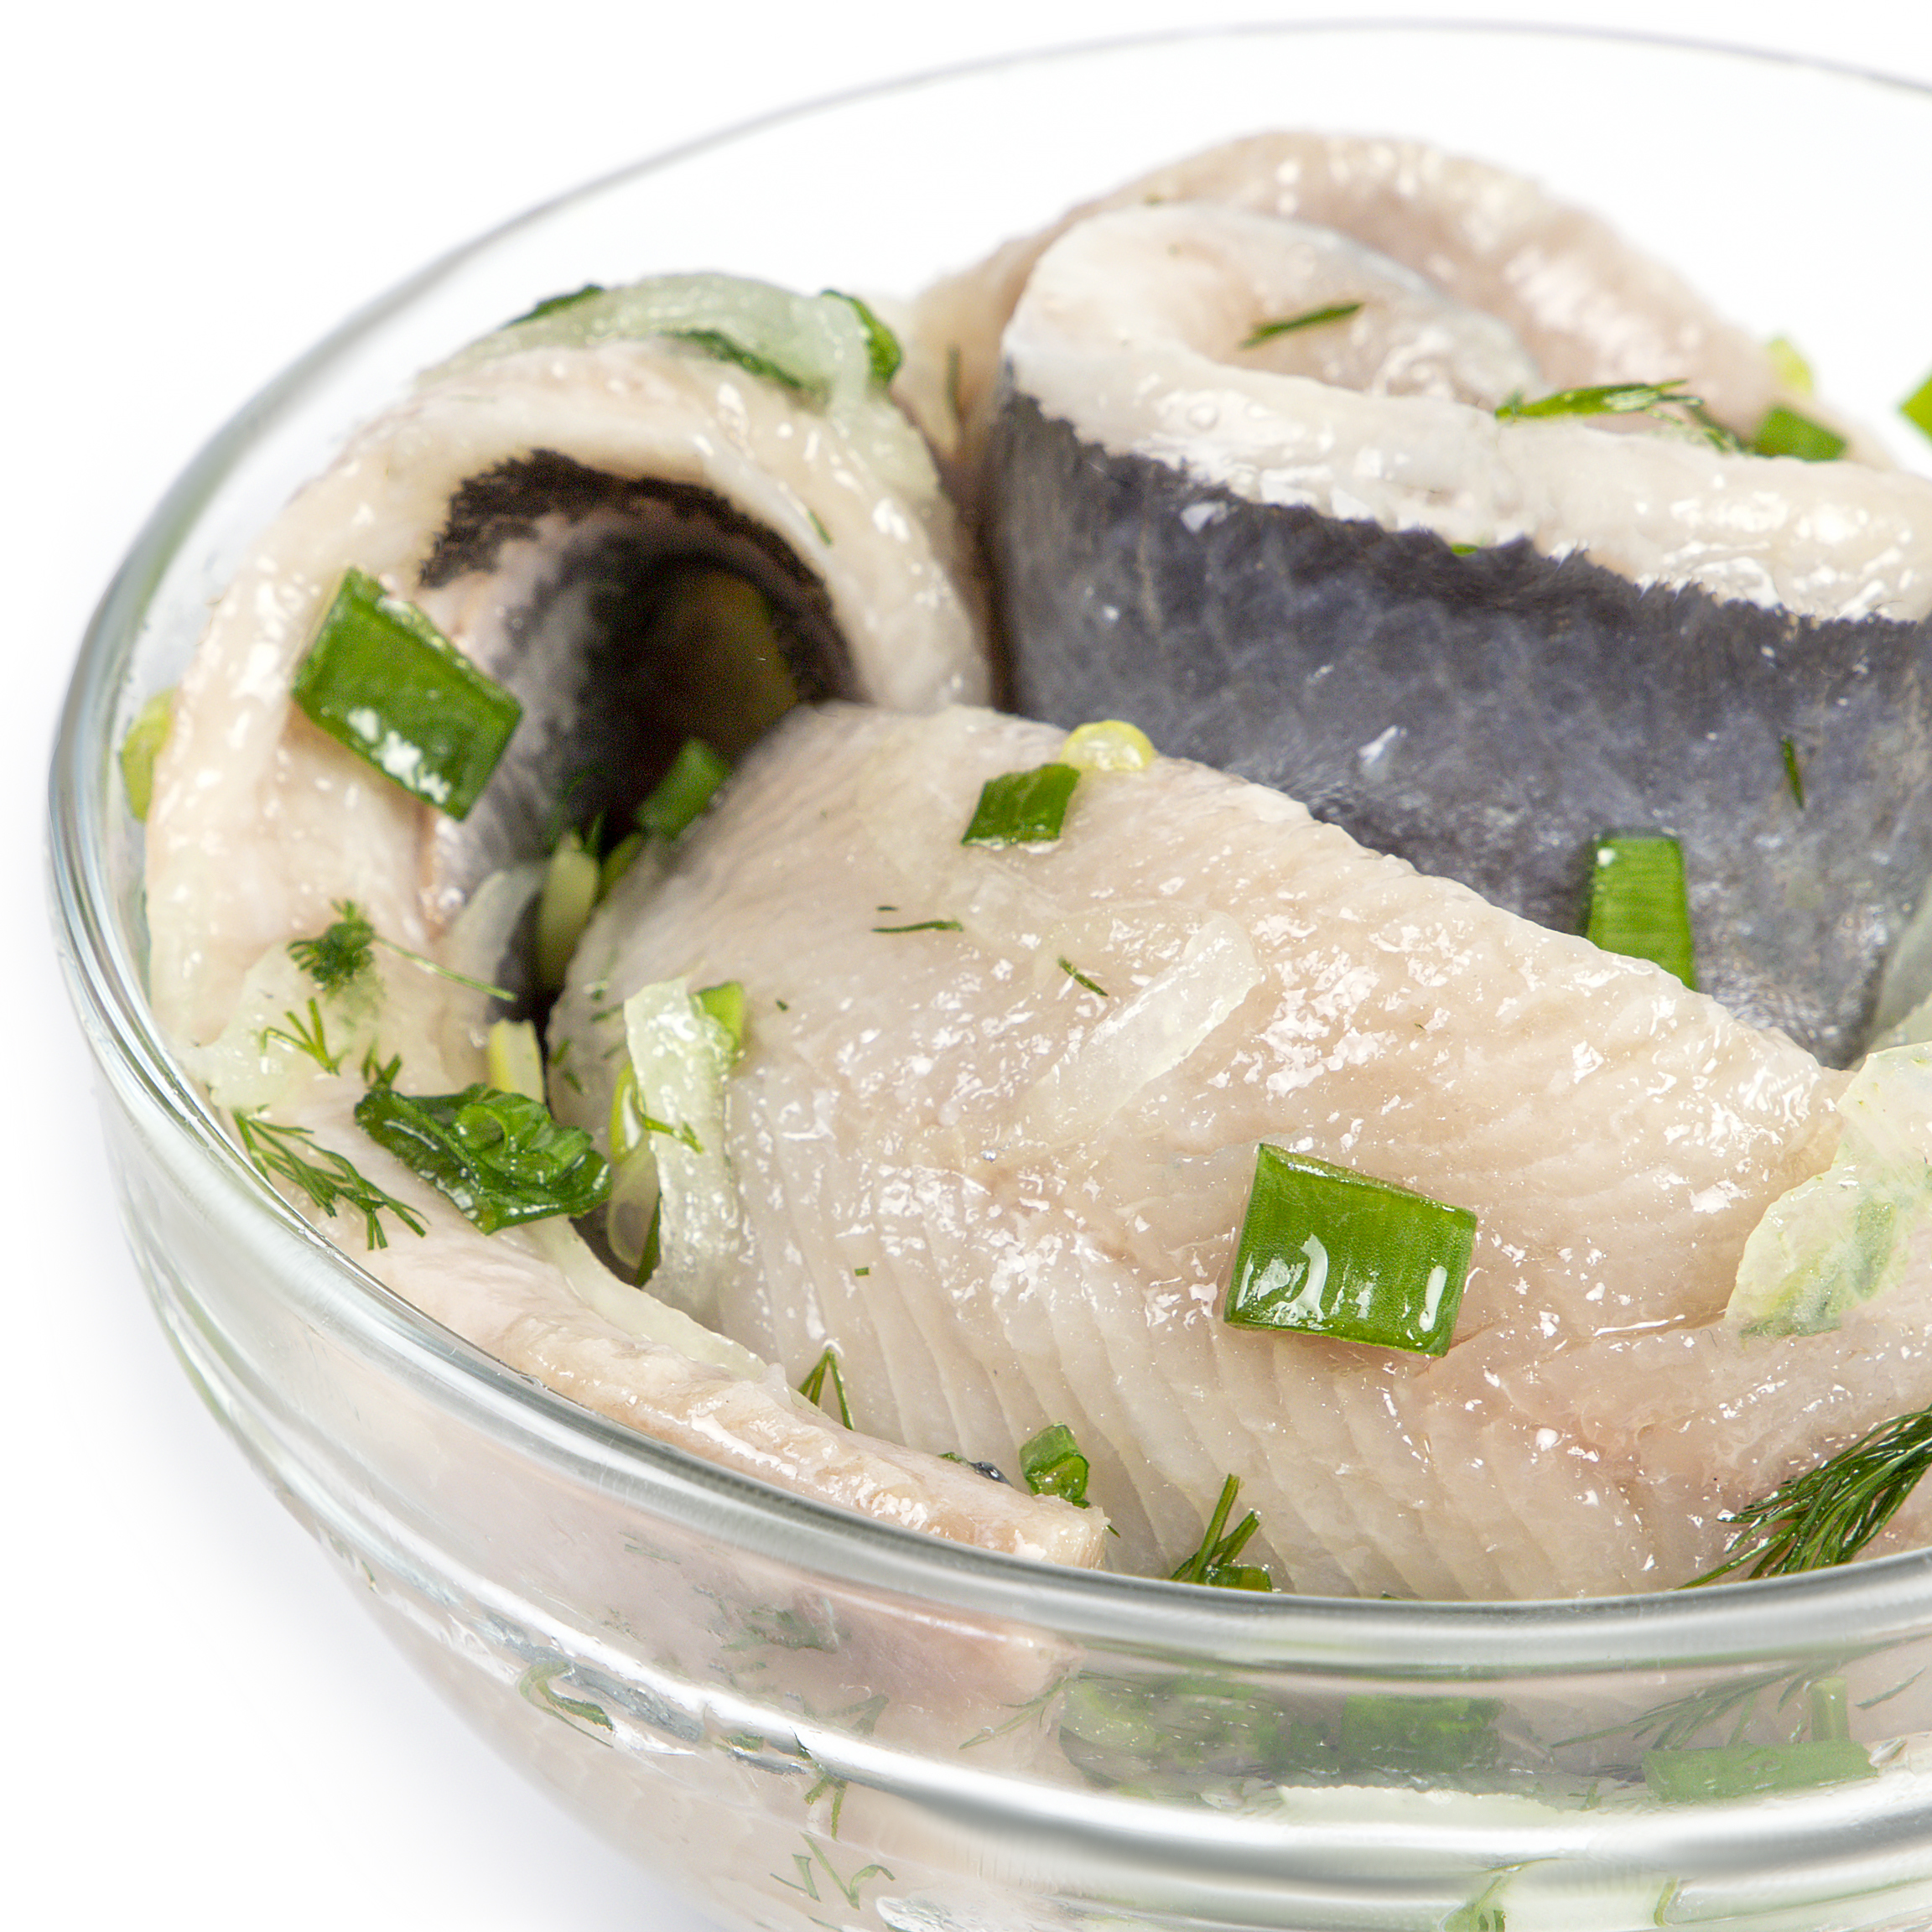 Homemade herring fillet in olive oil